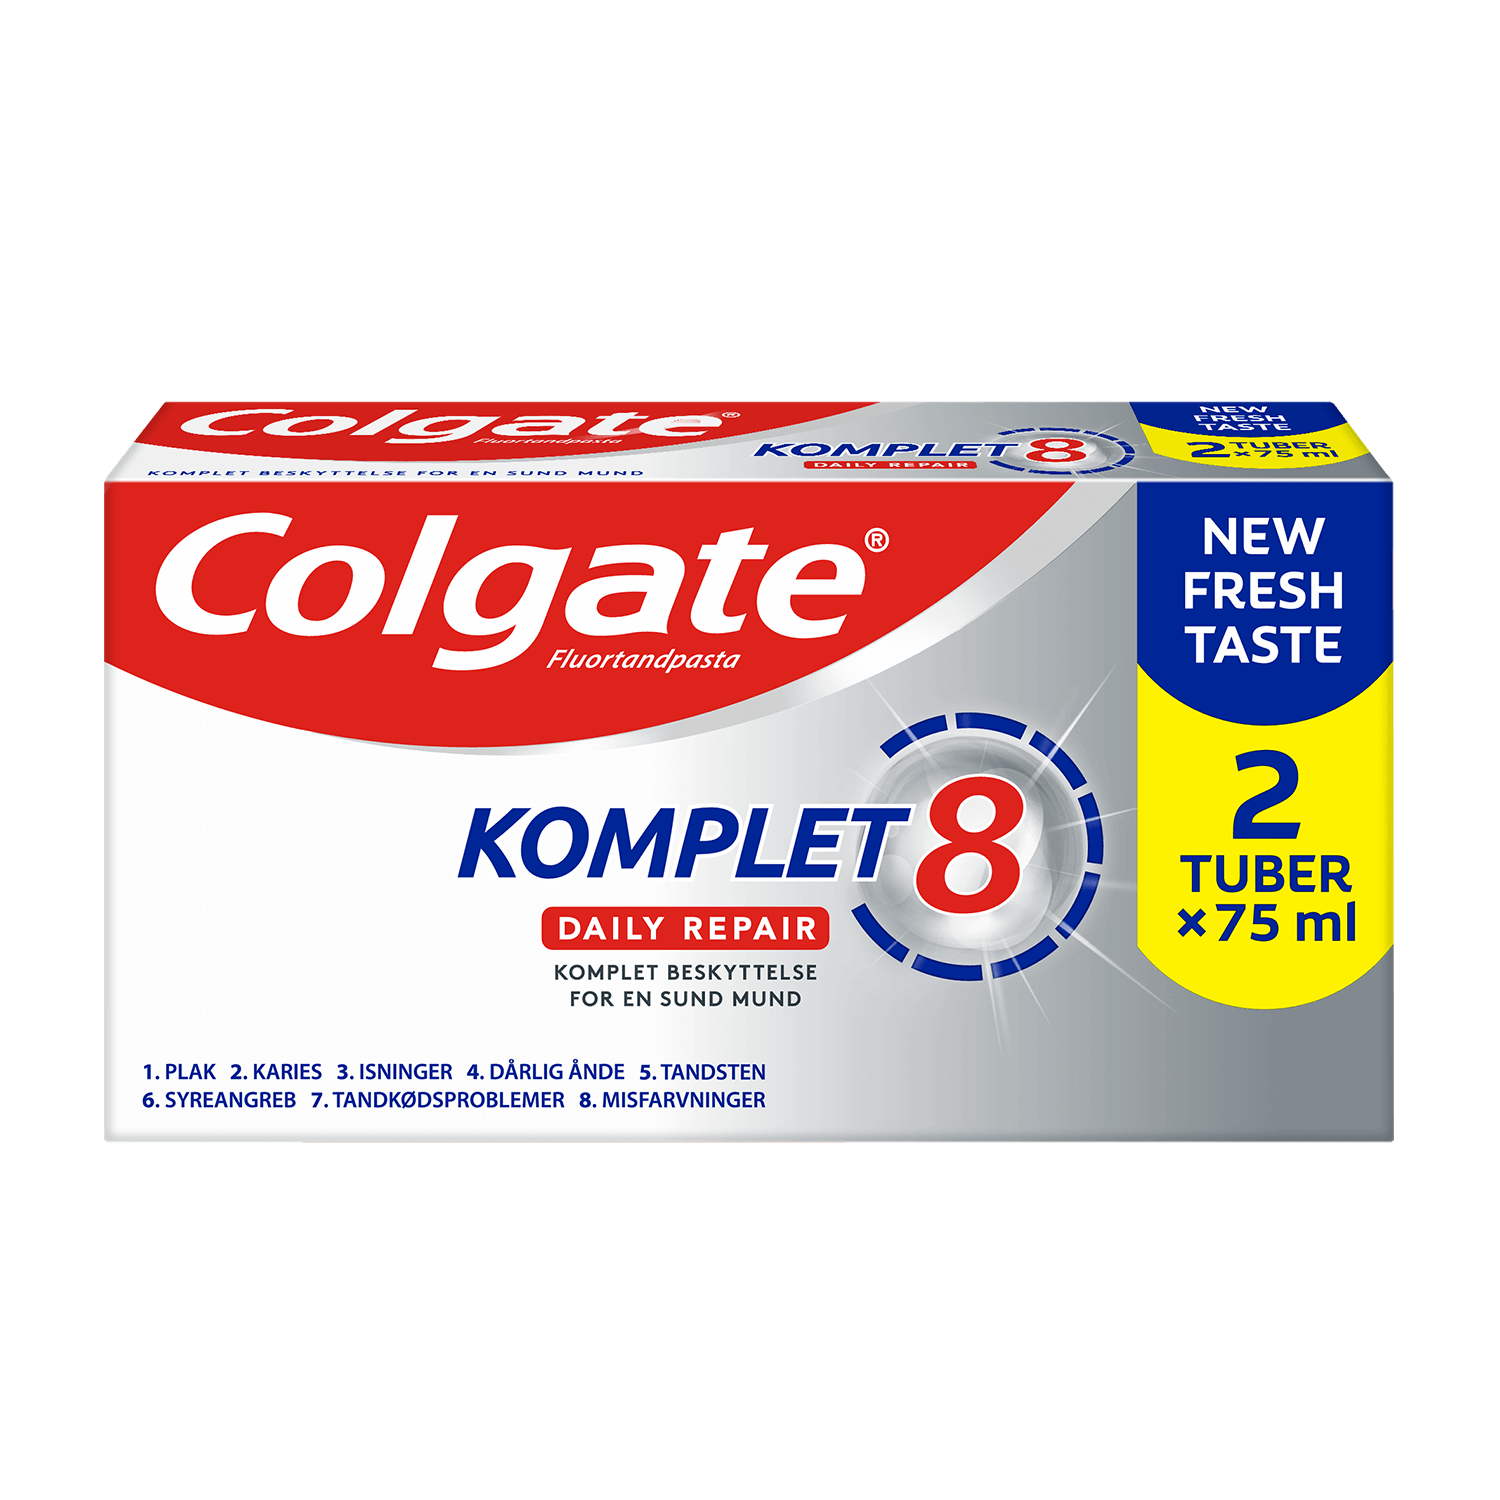 Komplet – Daily Repair tandpasta 2x75 | Colgate®